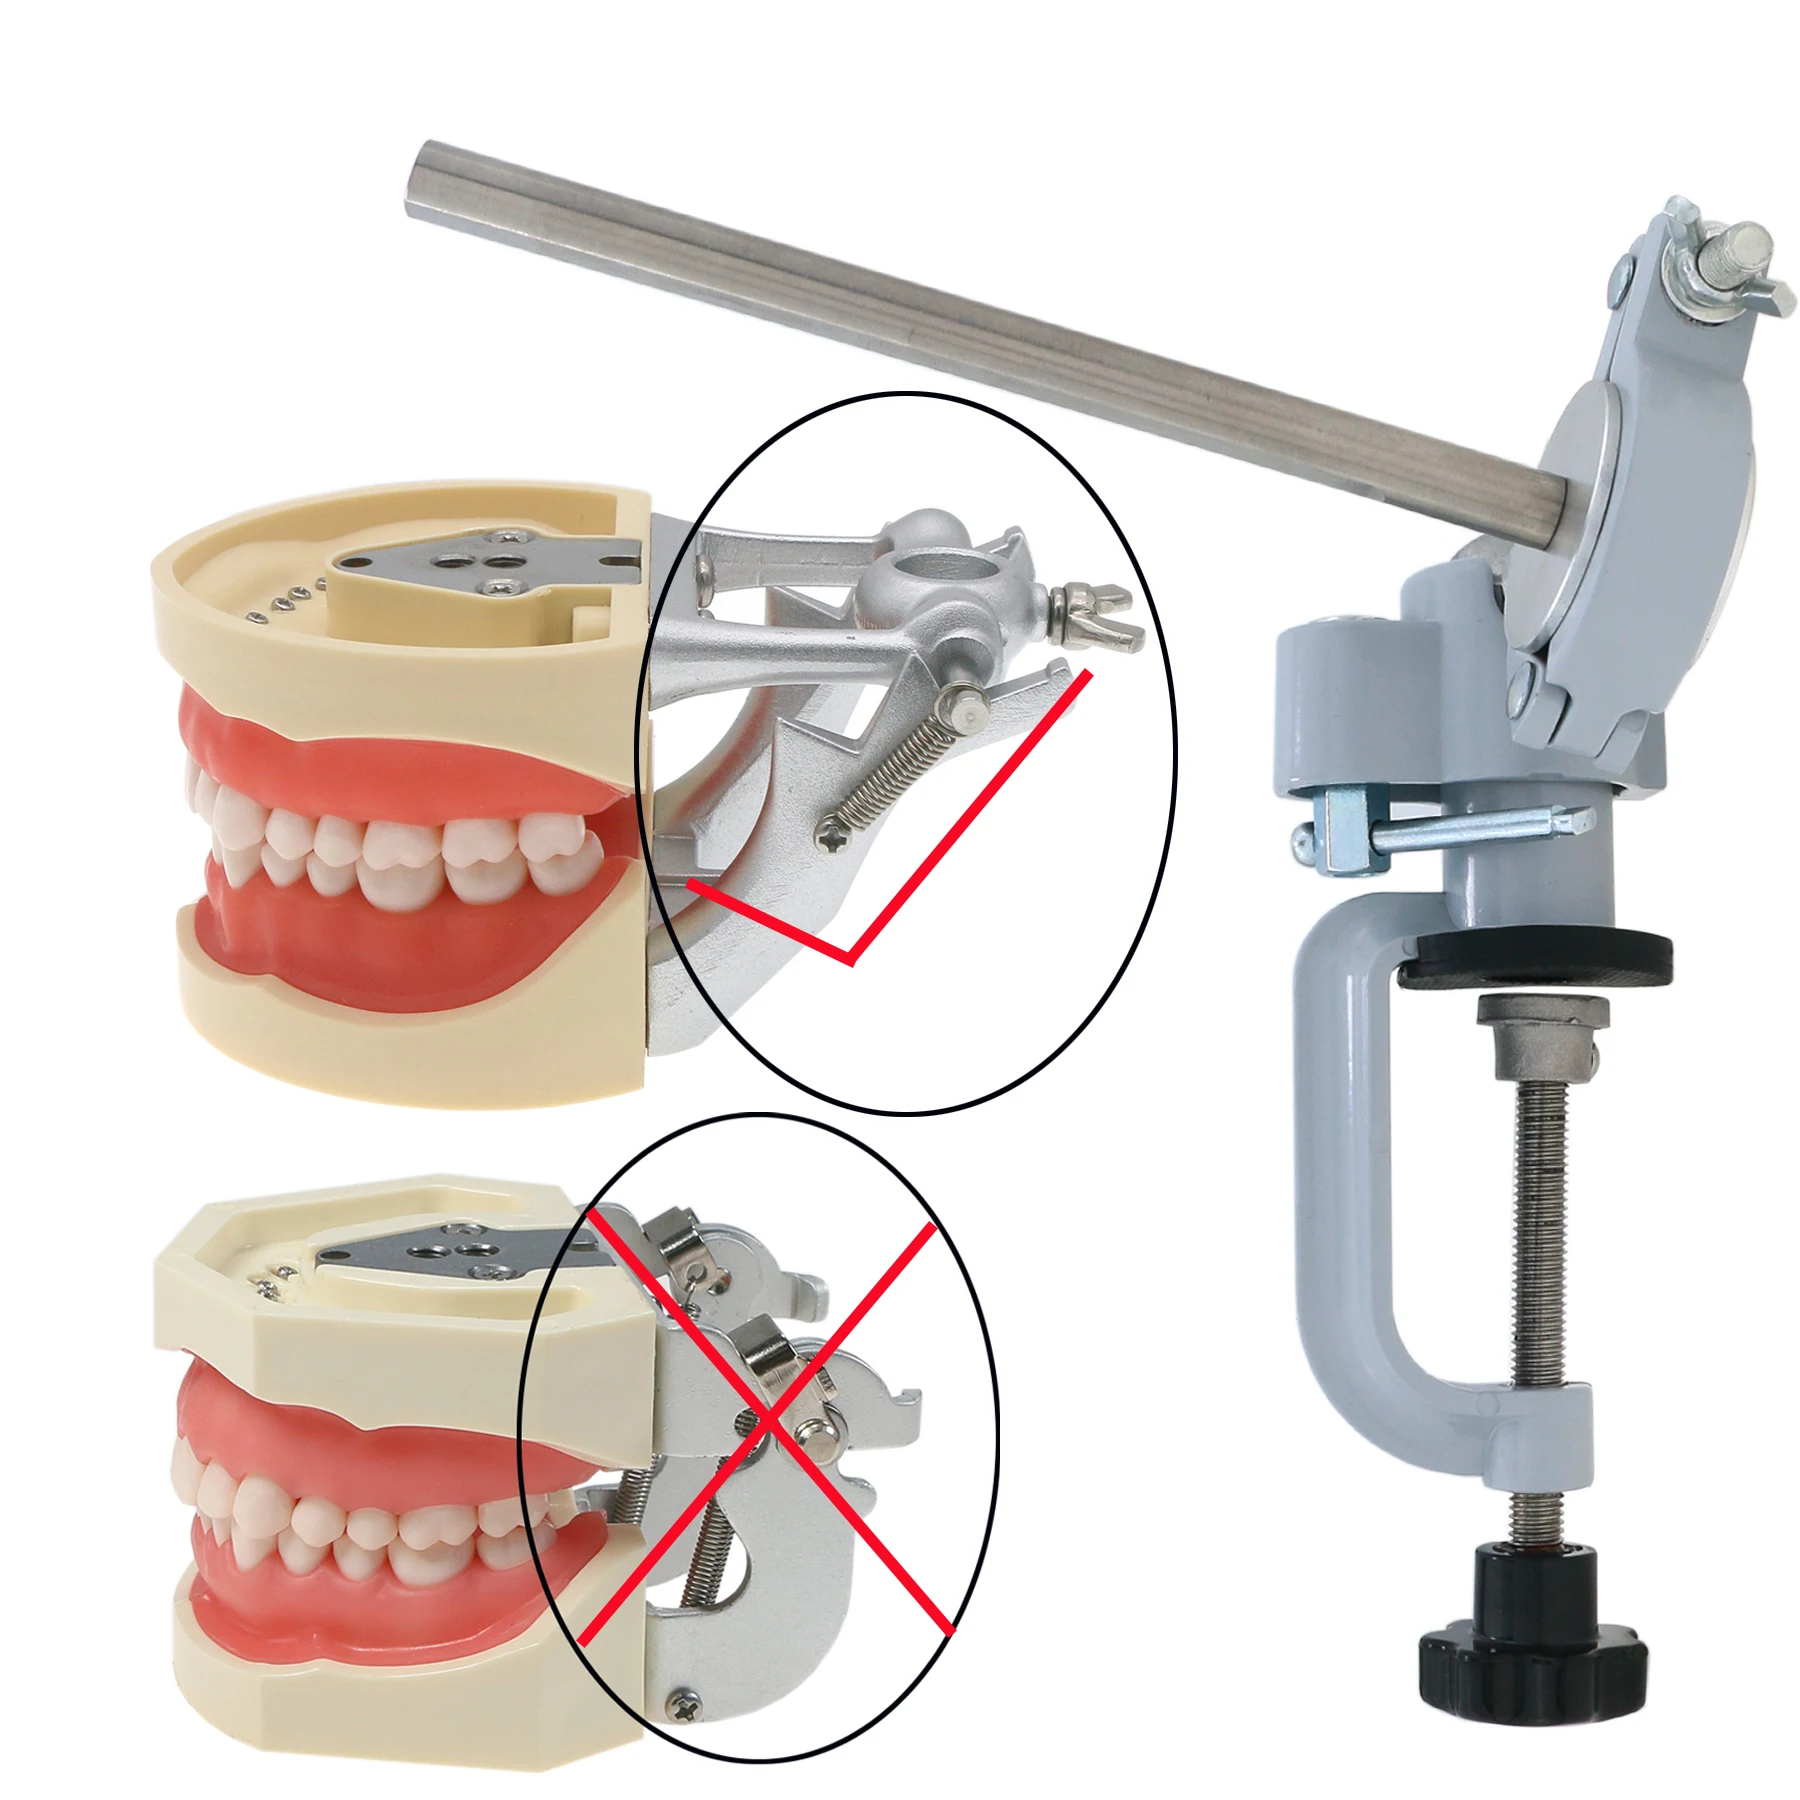 Зубная модель зубного столба, регулируемая фиксация на столе на 360 ° для баскетбола kilgodnissin Колумбия Dentoform Frasaco и т. Д.